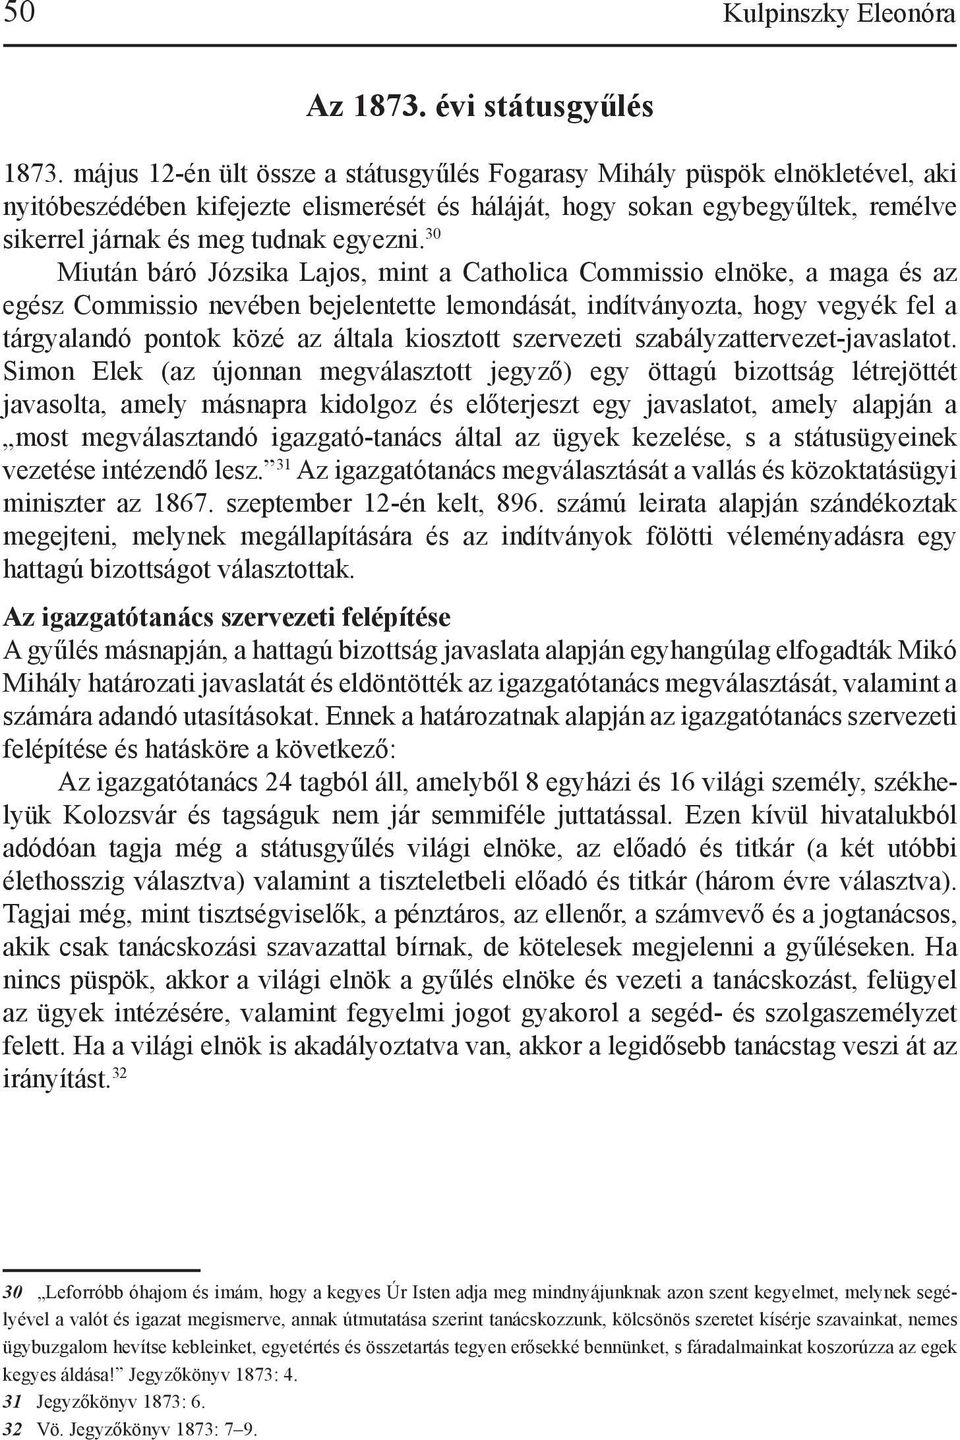 30 Miután báró Józsika Lajos, mint a Catholica Commissio elnöke, a maga és az egész Commissio nevében bejelentette lemondását, indítványozta, hogy vegyék fel a tárgyalandó pontok közé az általa